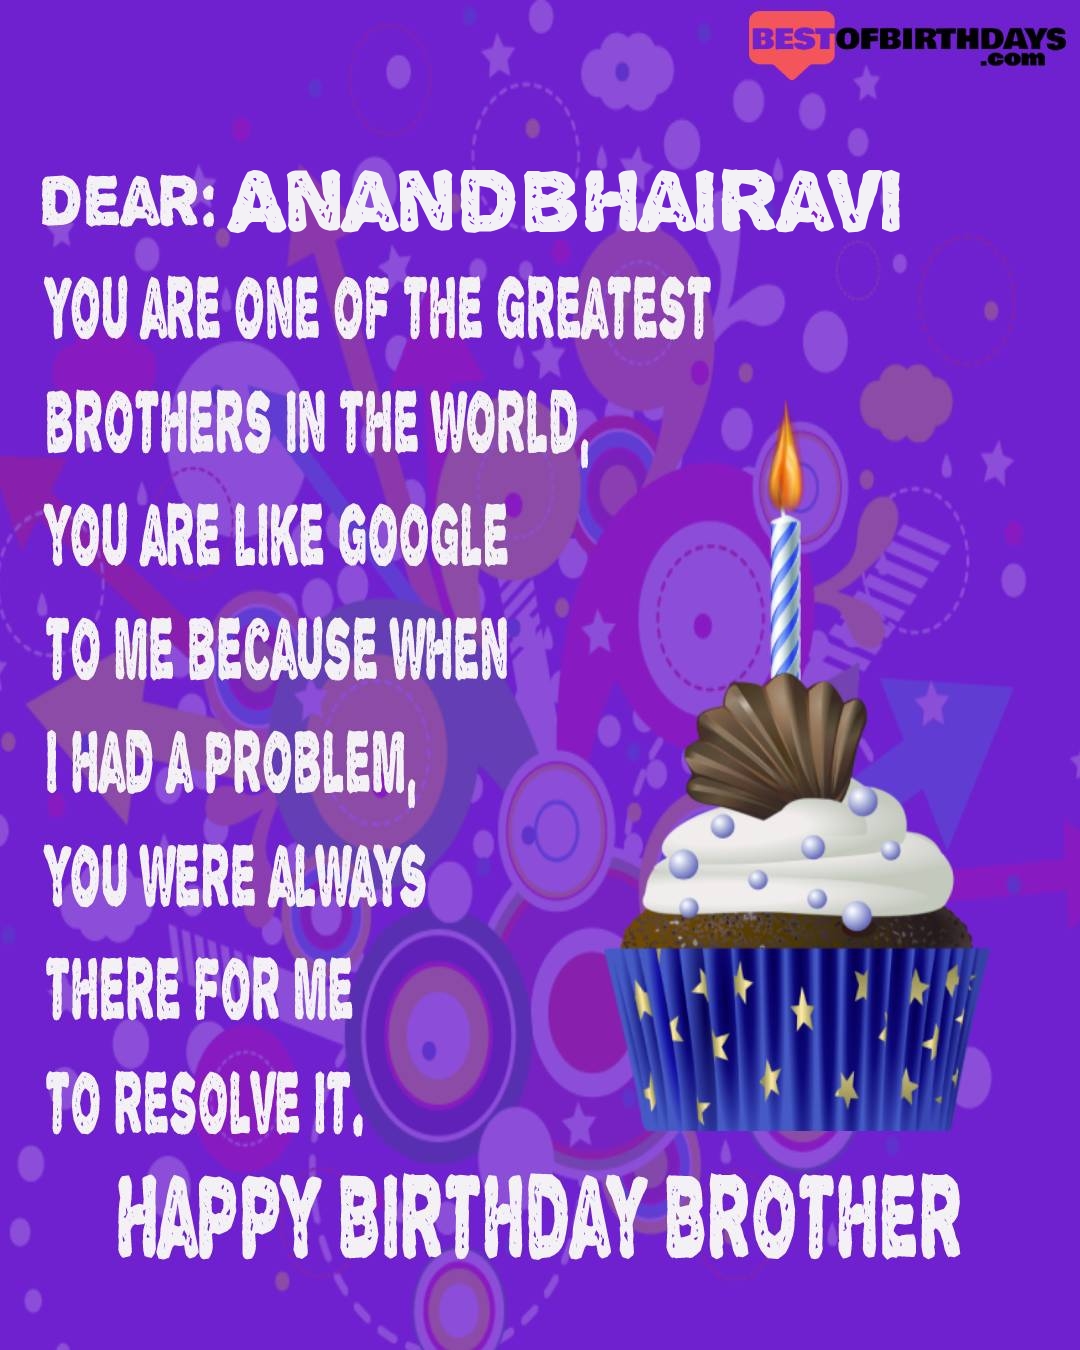 Happy birthday anandbhairavi bhai brother bro